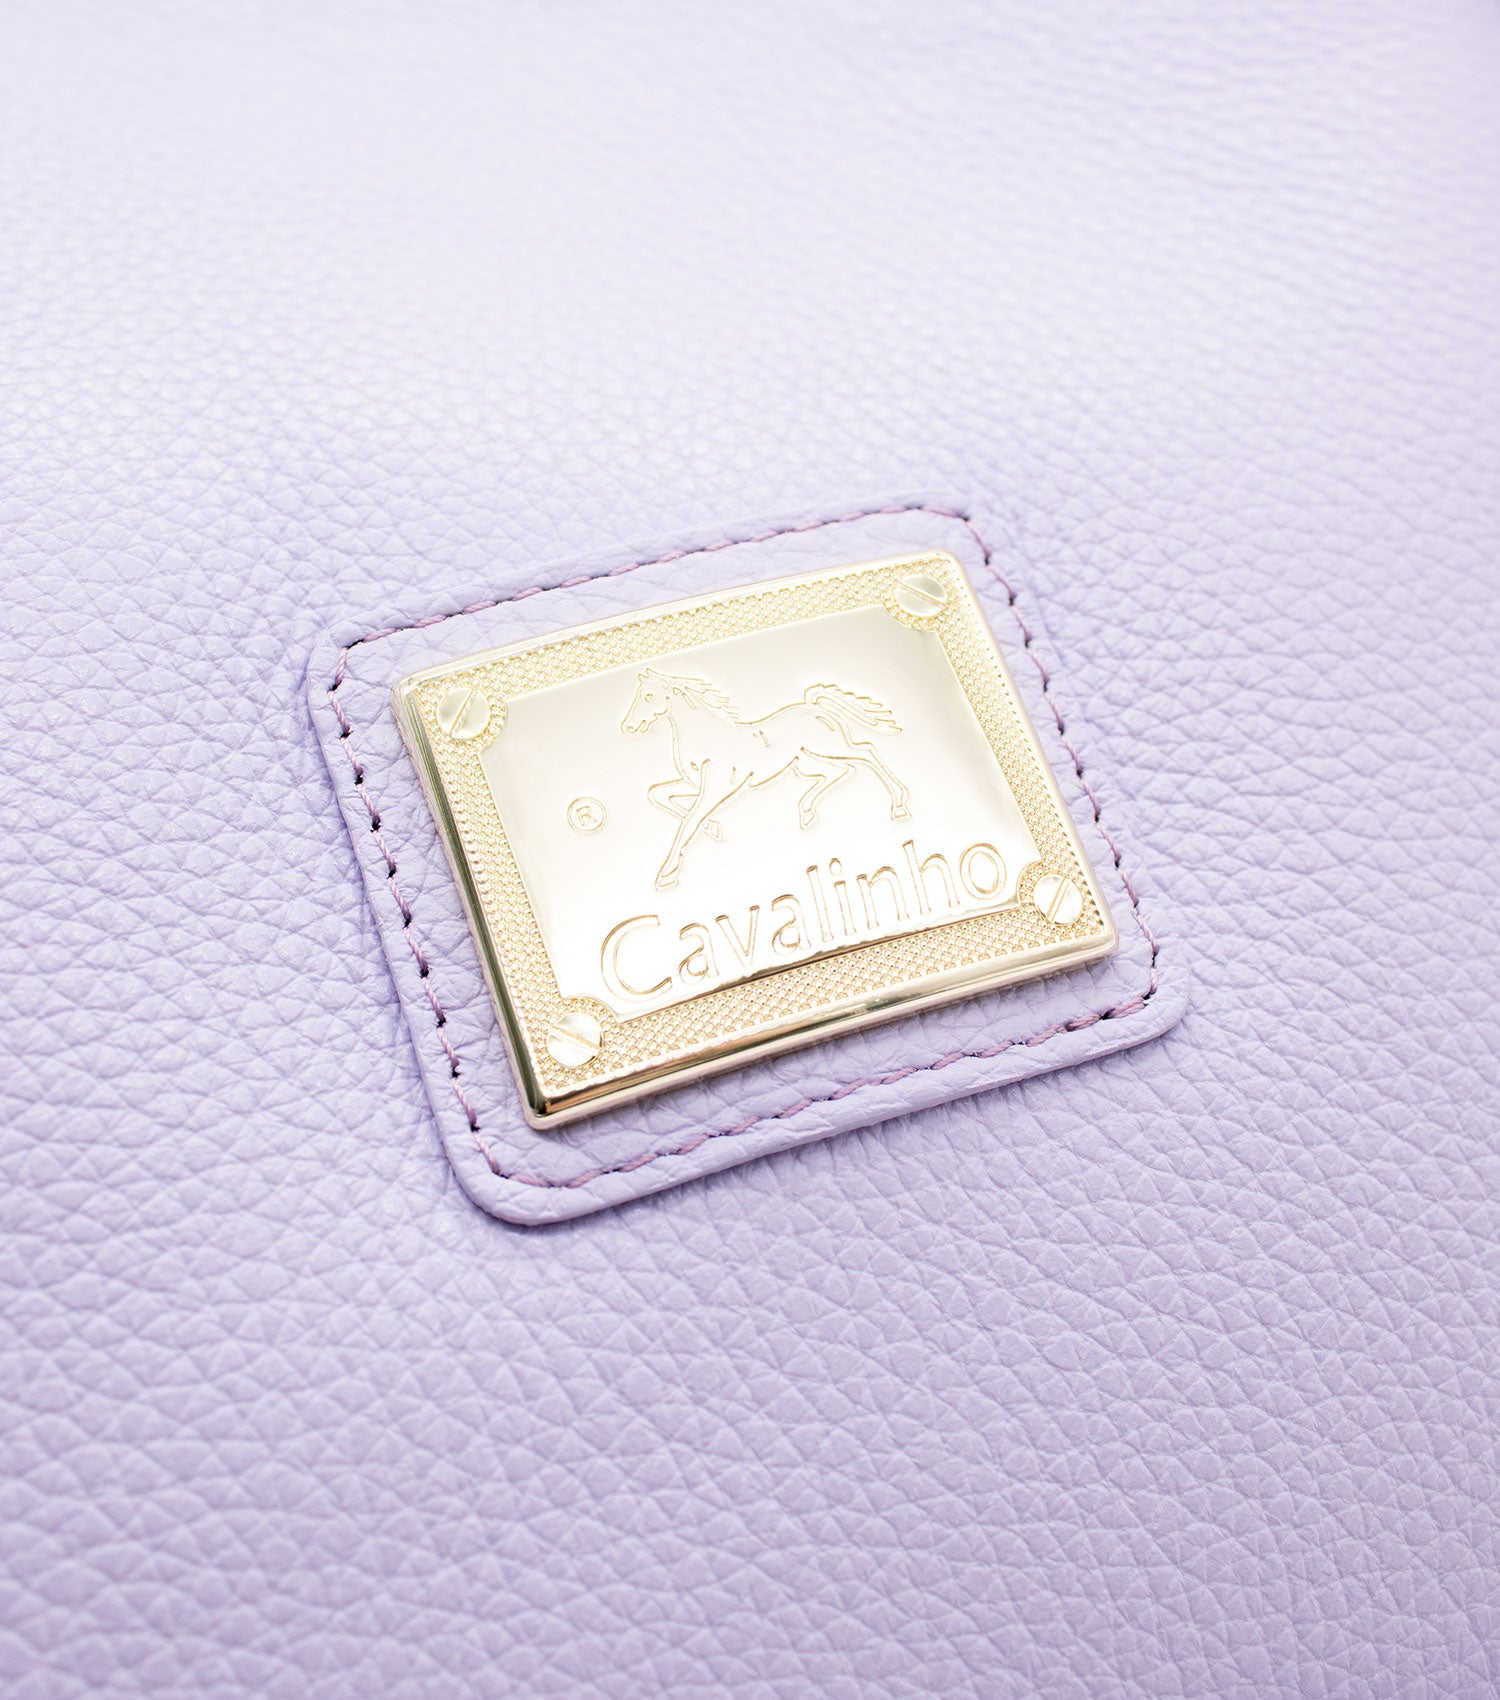 Cavalinho Muse Leather Handbag - SKU 18300490.39.99. | #color_Lilac